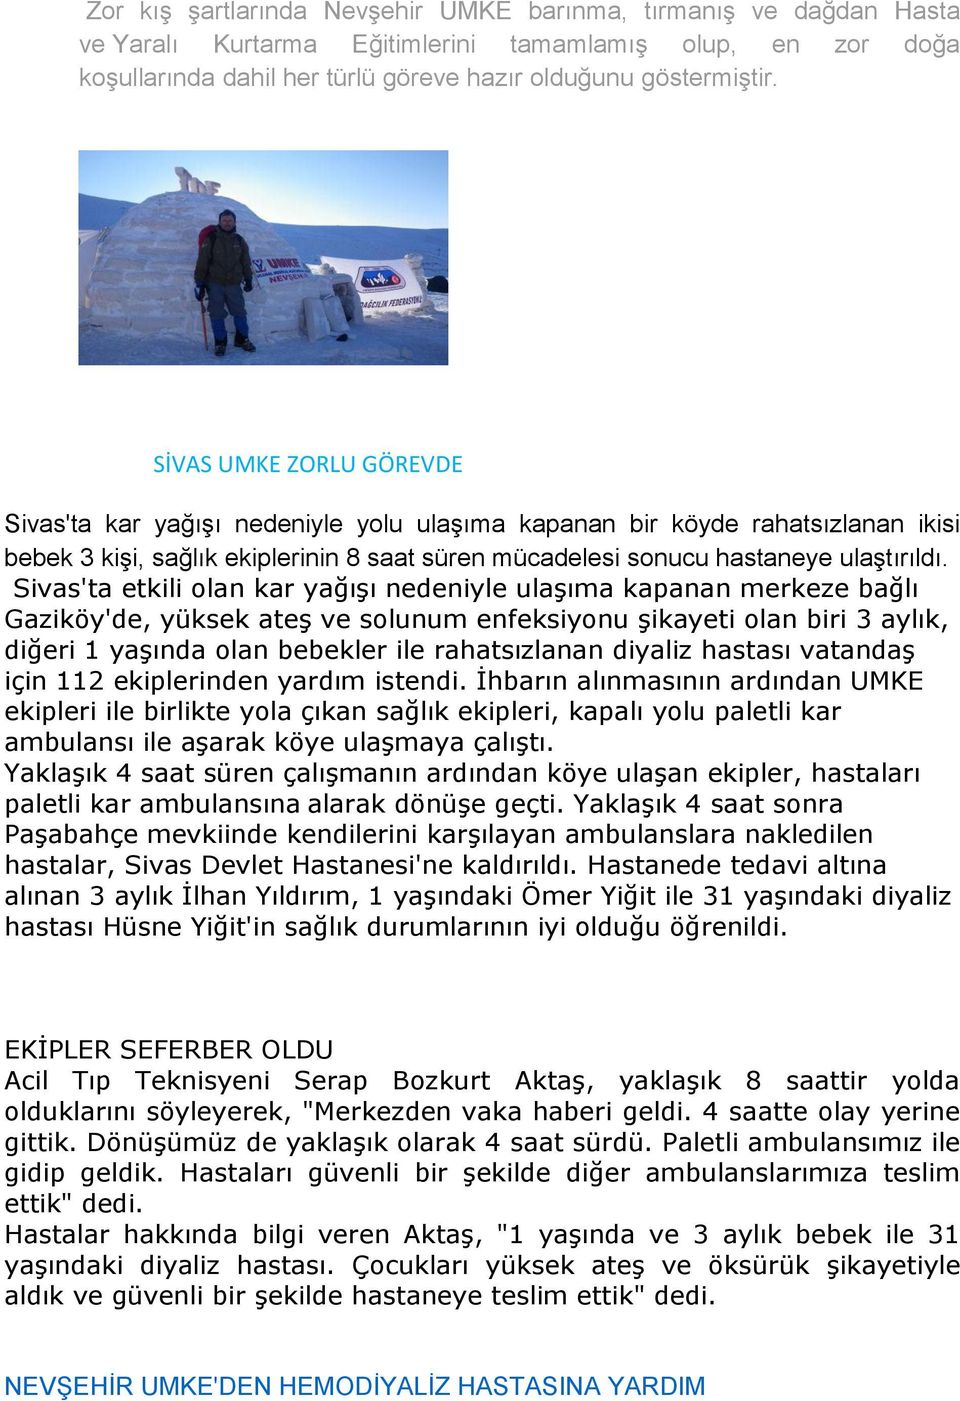 Sivas'ta etkili olan kar yağıģı nedeniyle ulaģıma kapanan merkeze bağlı Gaziköy'de, yüksek ateģ ve solunum enfeksiyonu Ģikayeti olan biri 3 aylık, diğeri 1 yaģında olan bebekler ile rahatsızlanan